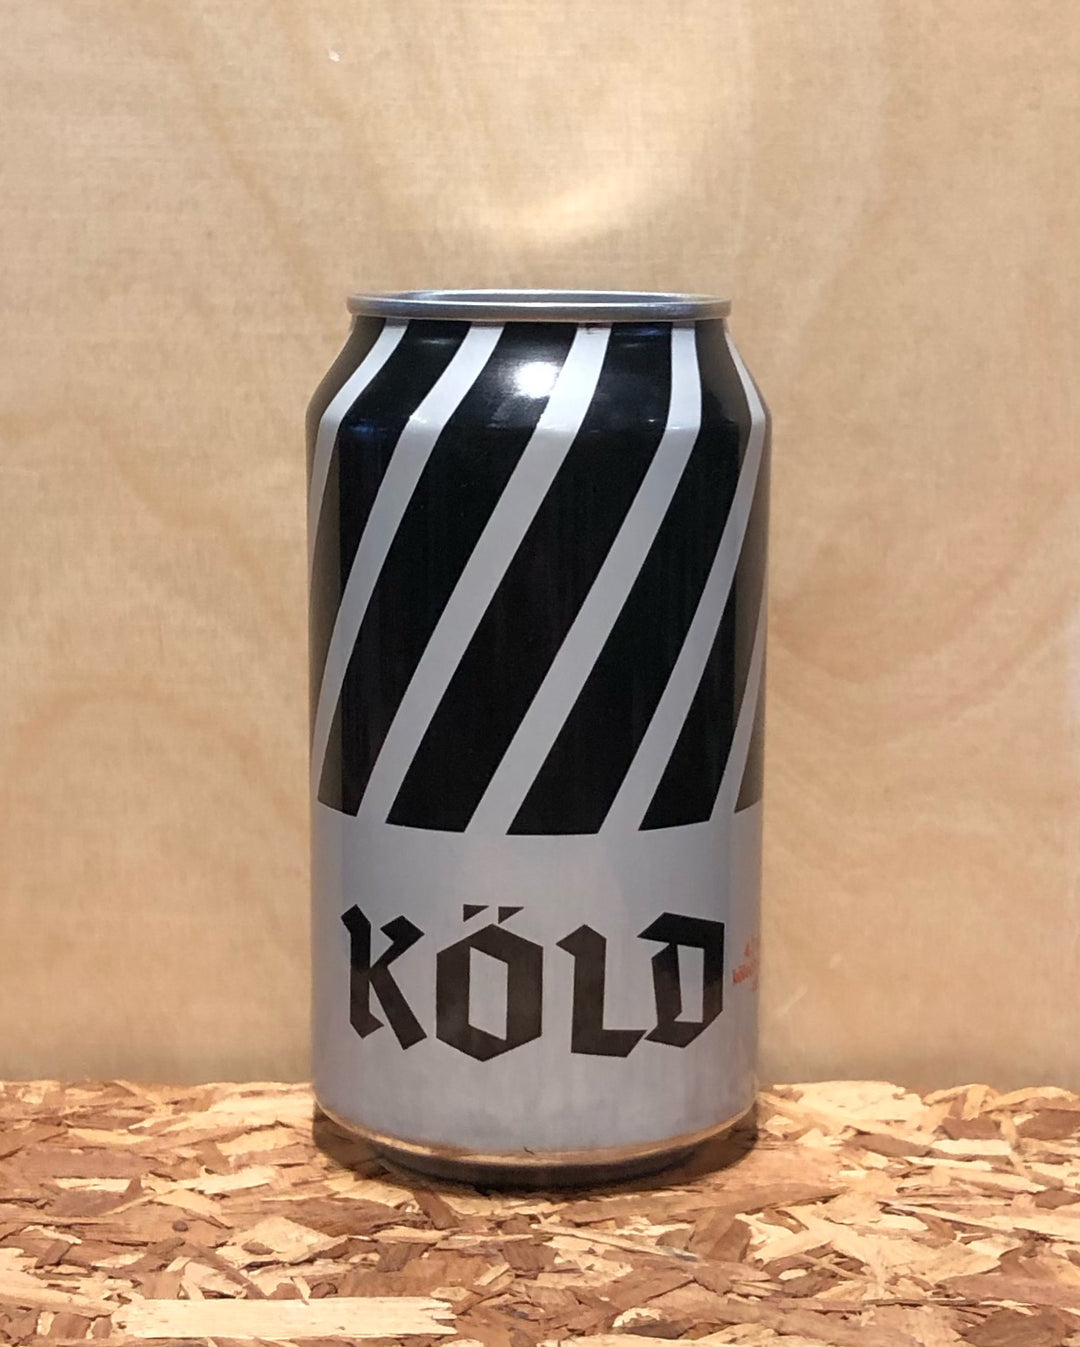 Fair State 'Köld' Kolsch-Style Ale (Minneapolos, MN)